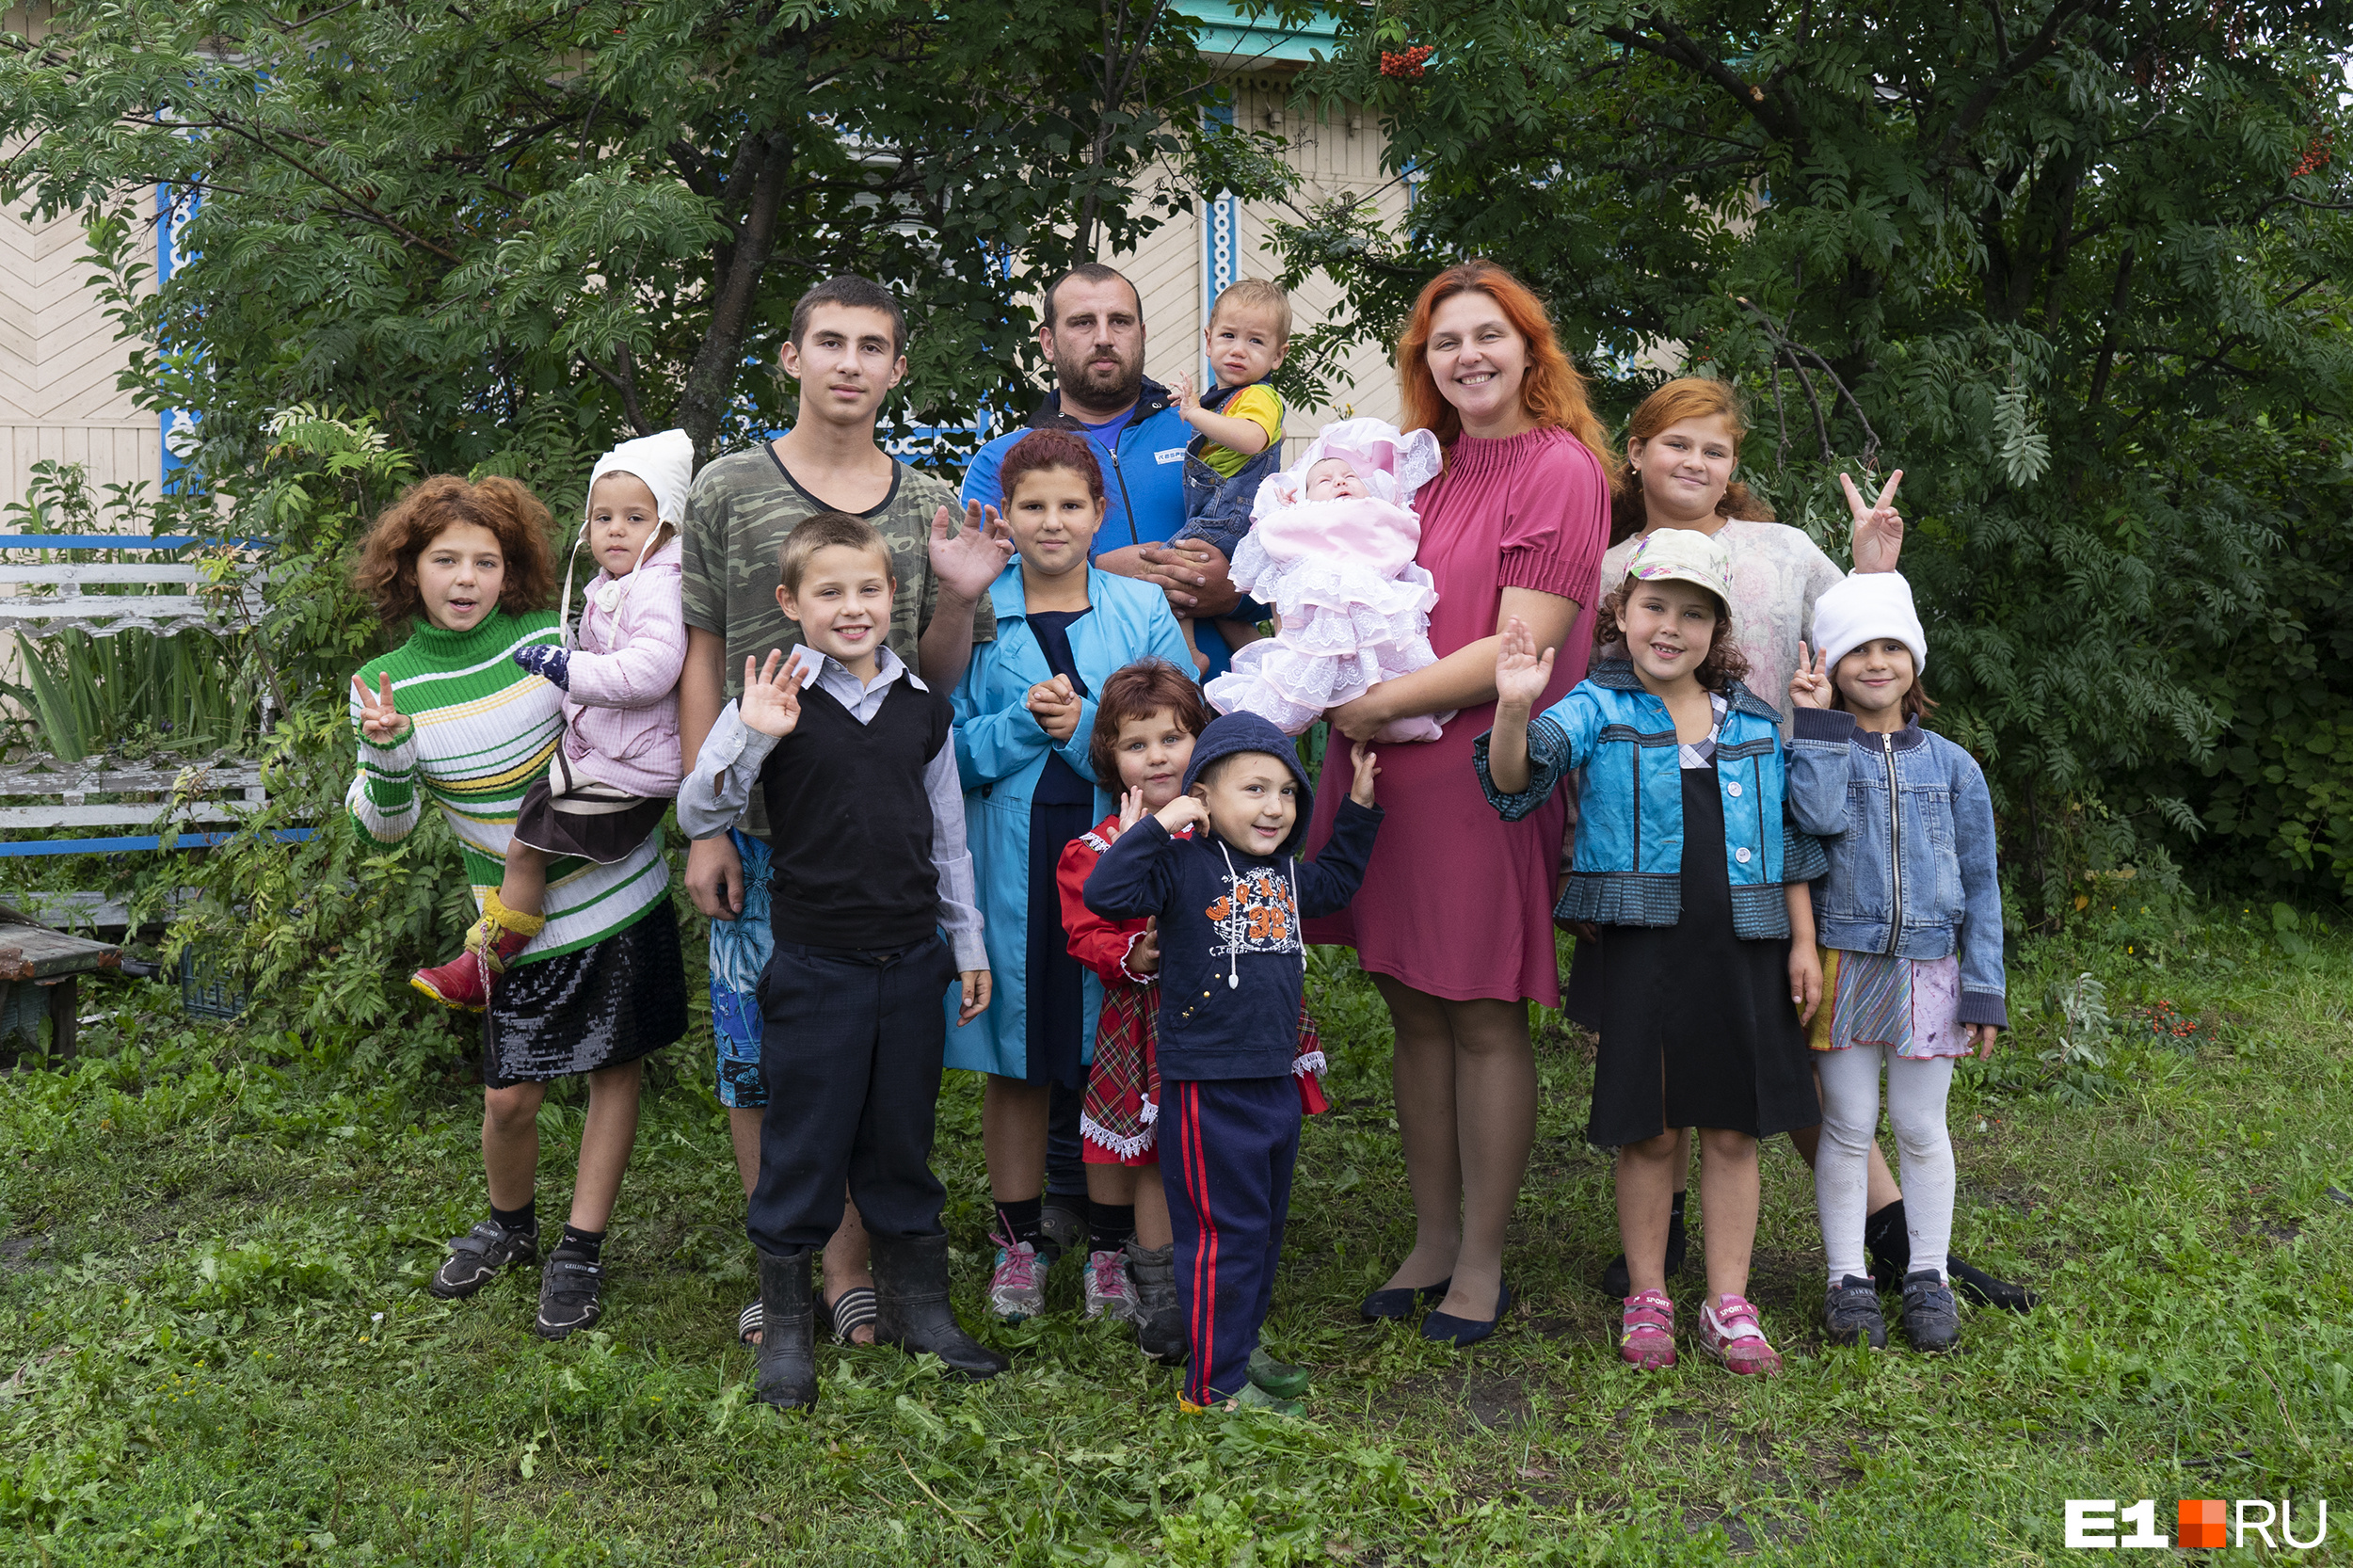 Екатерина Кириченко, многодетная мама, считает, что самые незащищенные — те, кто воспитывает одного-двух детей и мало зарабатывает